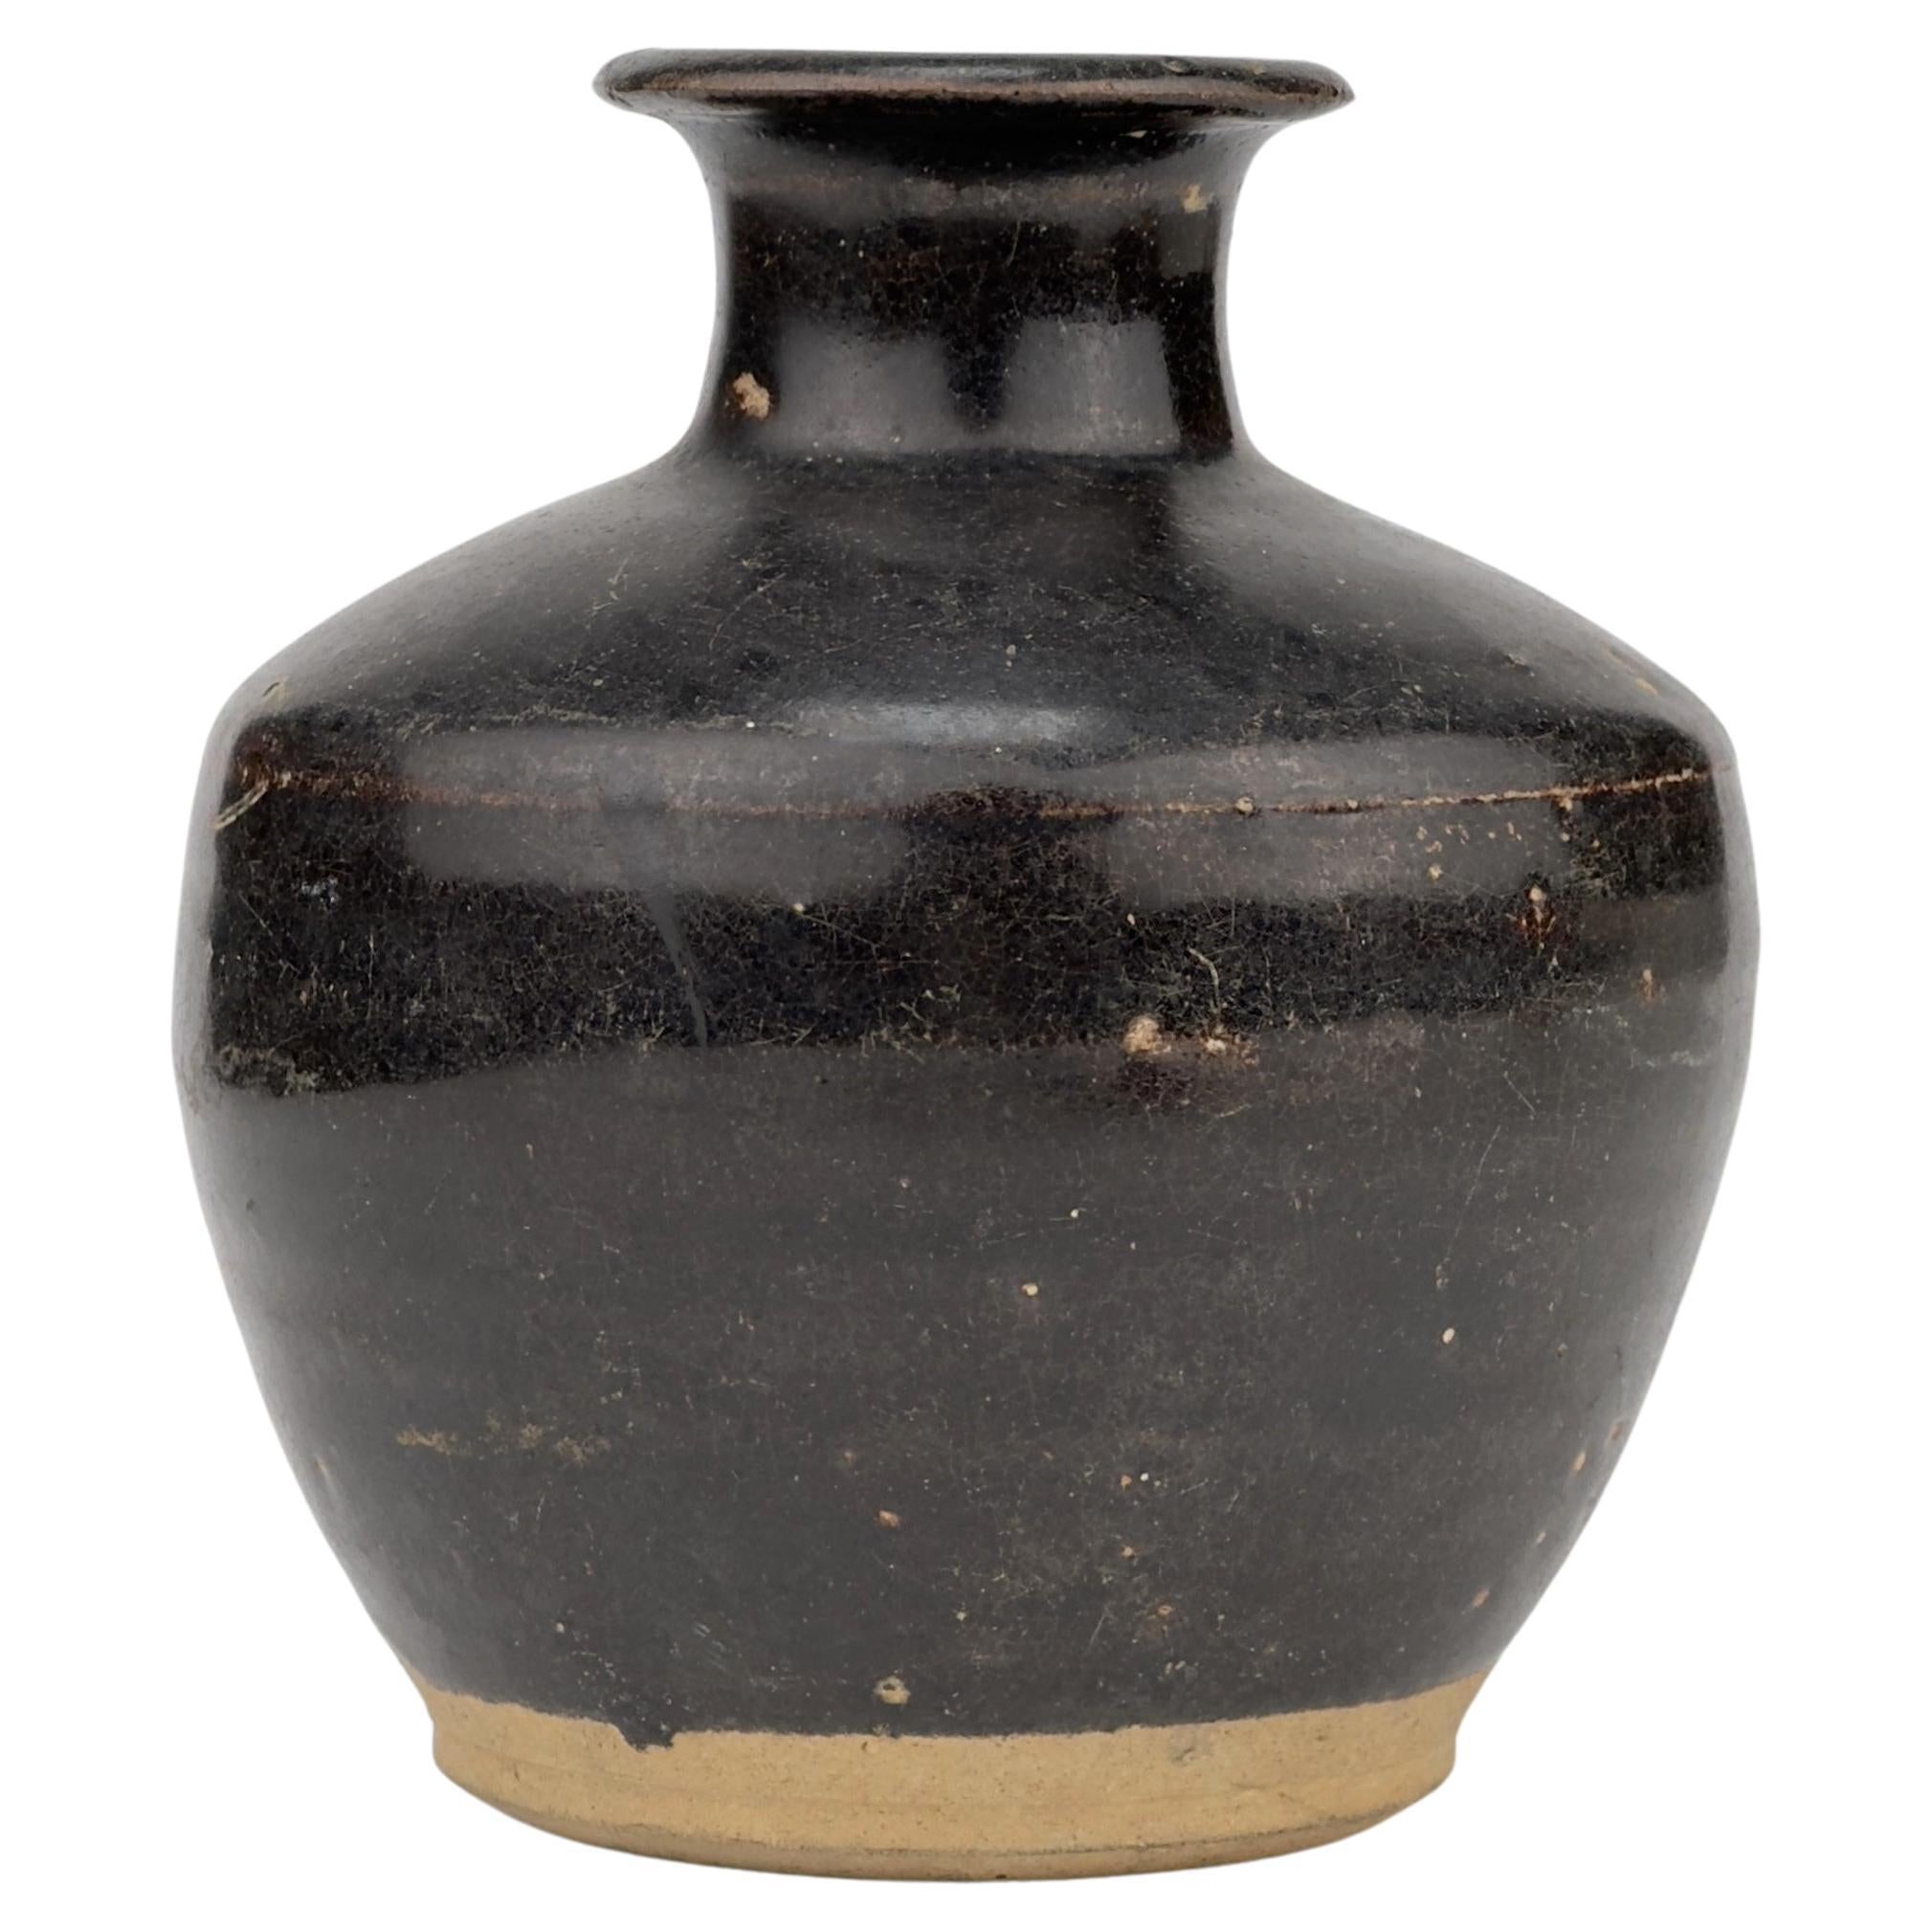 Black glazed bottle, Late Ming Era(16-17th century)